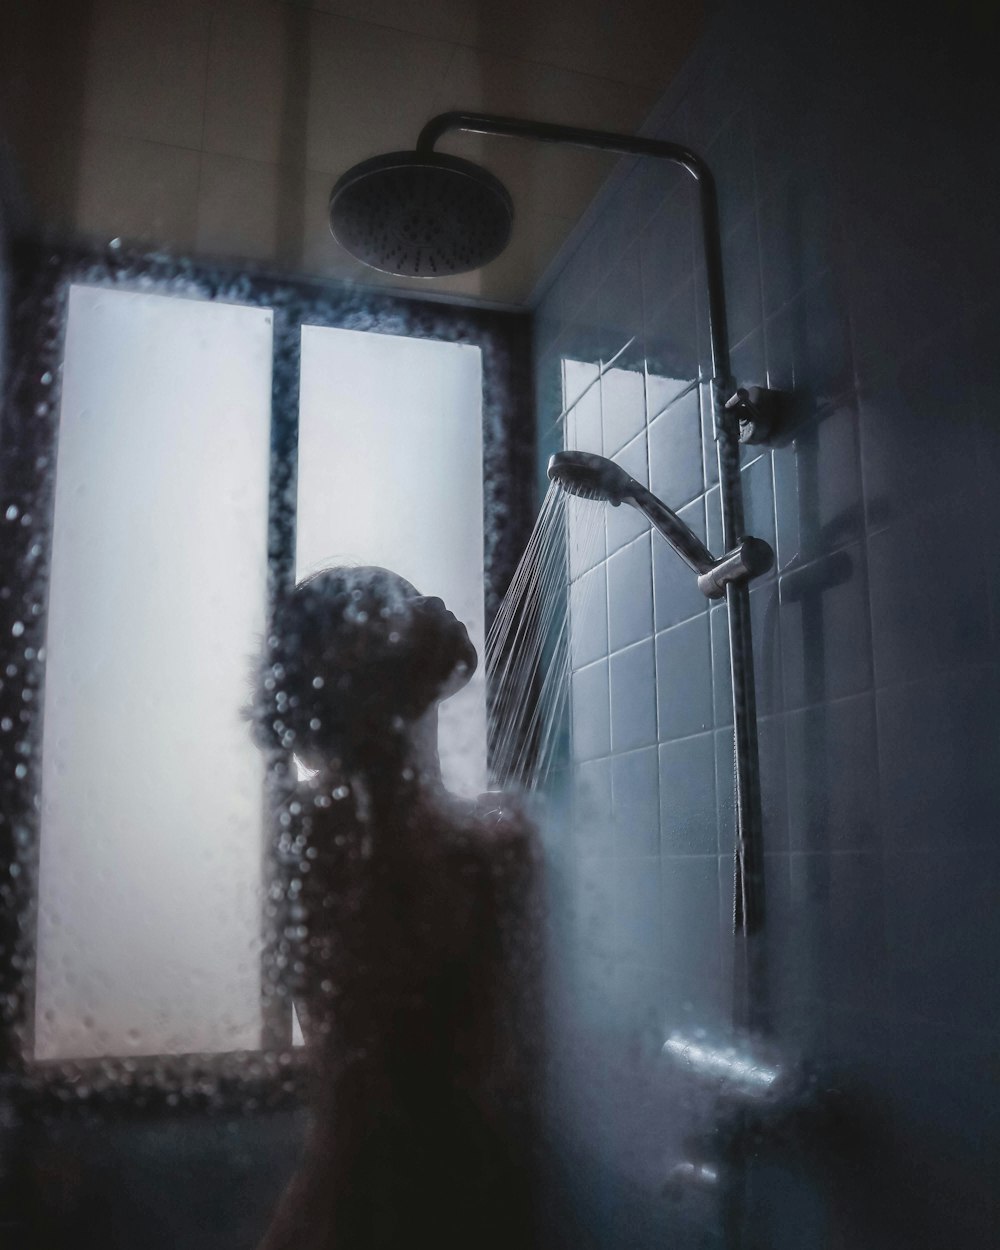 Mujer bajo el cabezal de la ducha